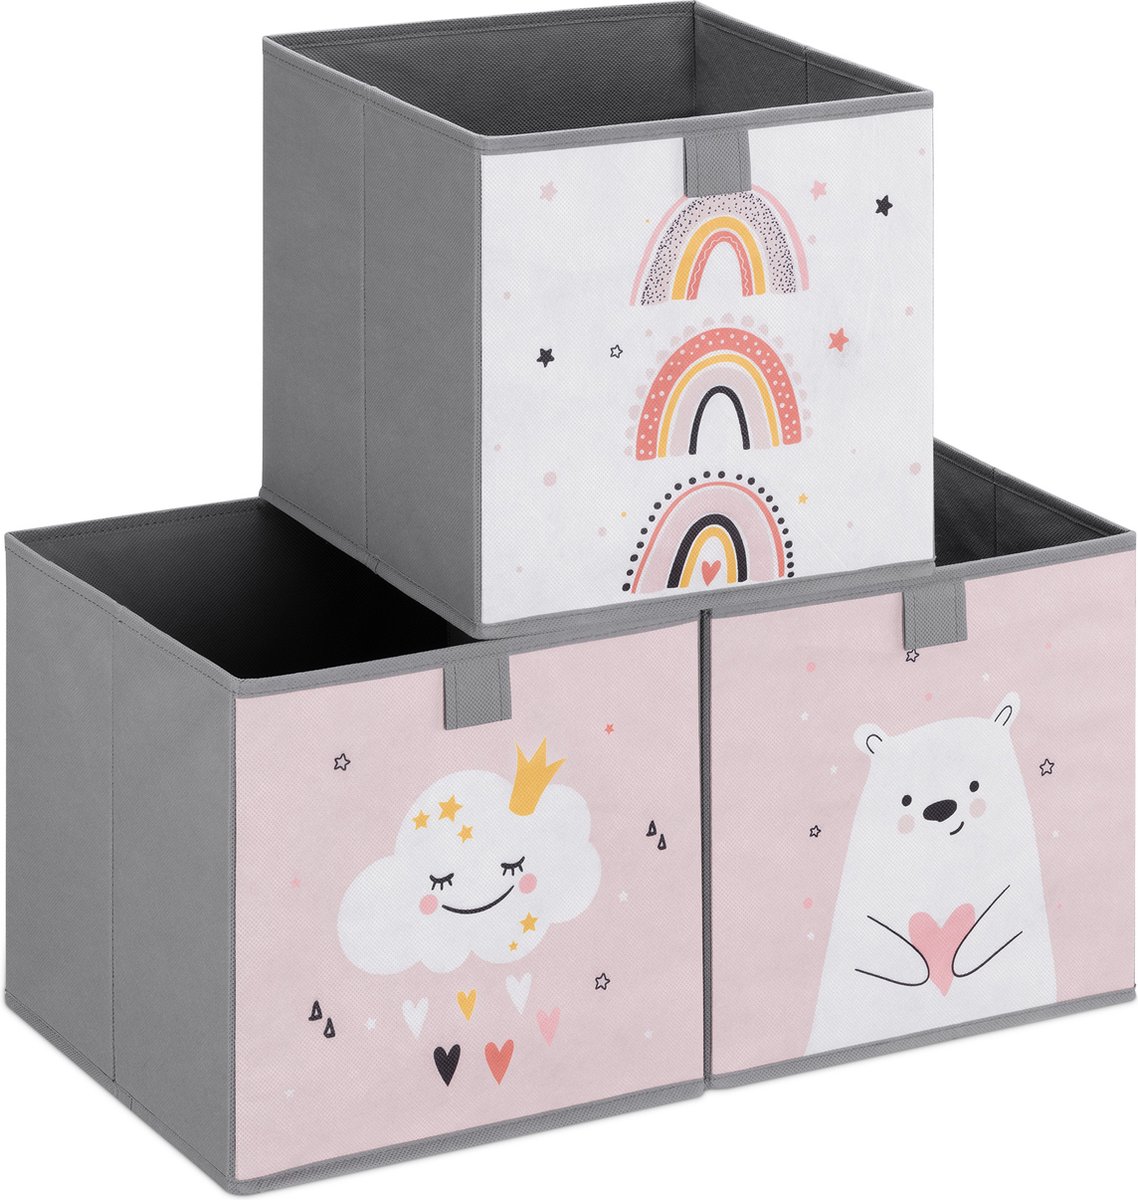 Navaris opbergdozen voor kinderen - Set van 3 opbergboxen met treklus - 28 x 28 x 28 cm - Opvouwbaar - Opbergmanden in roze/wit met dierenmotief